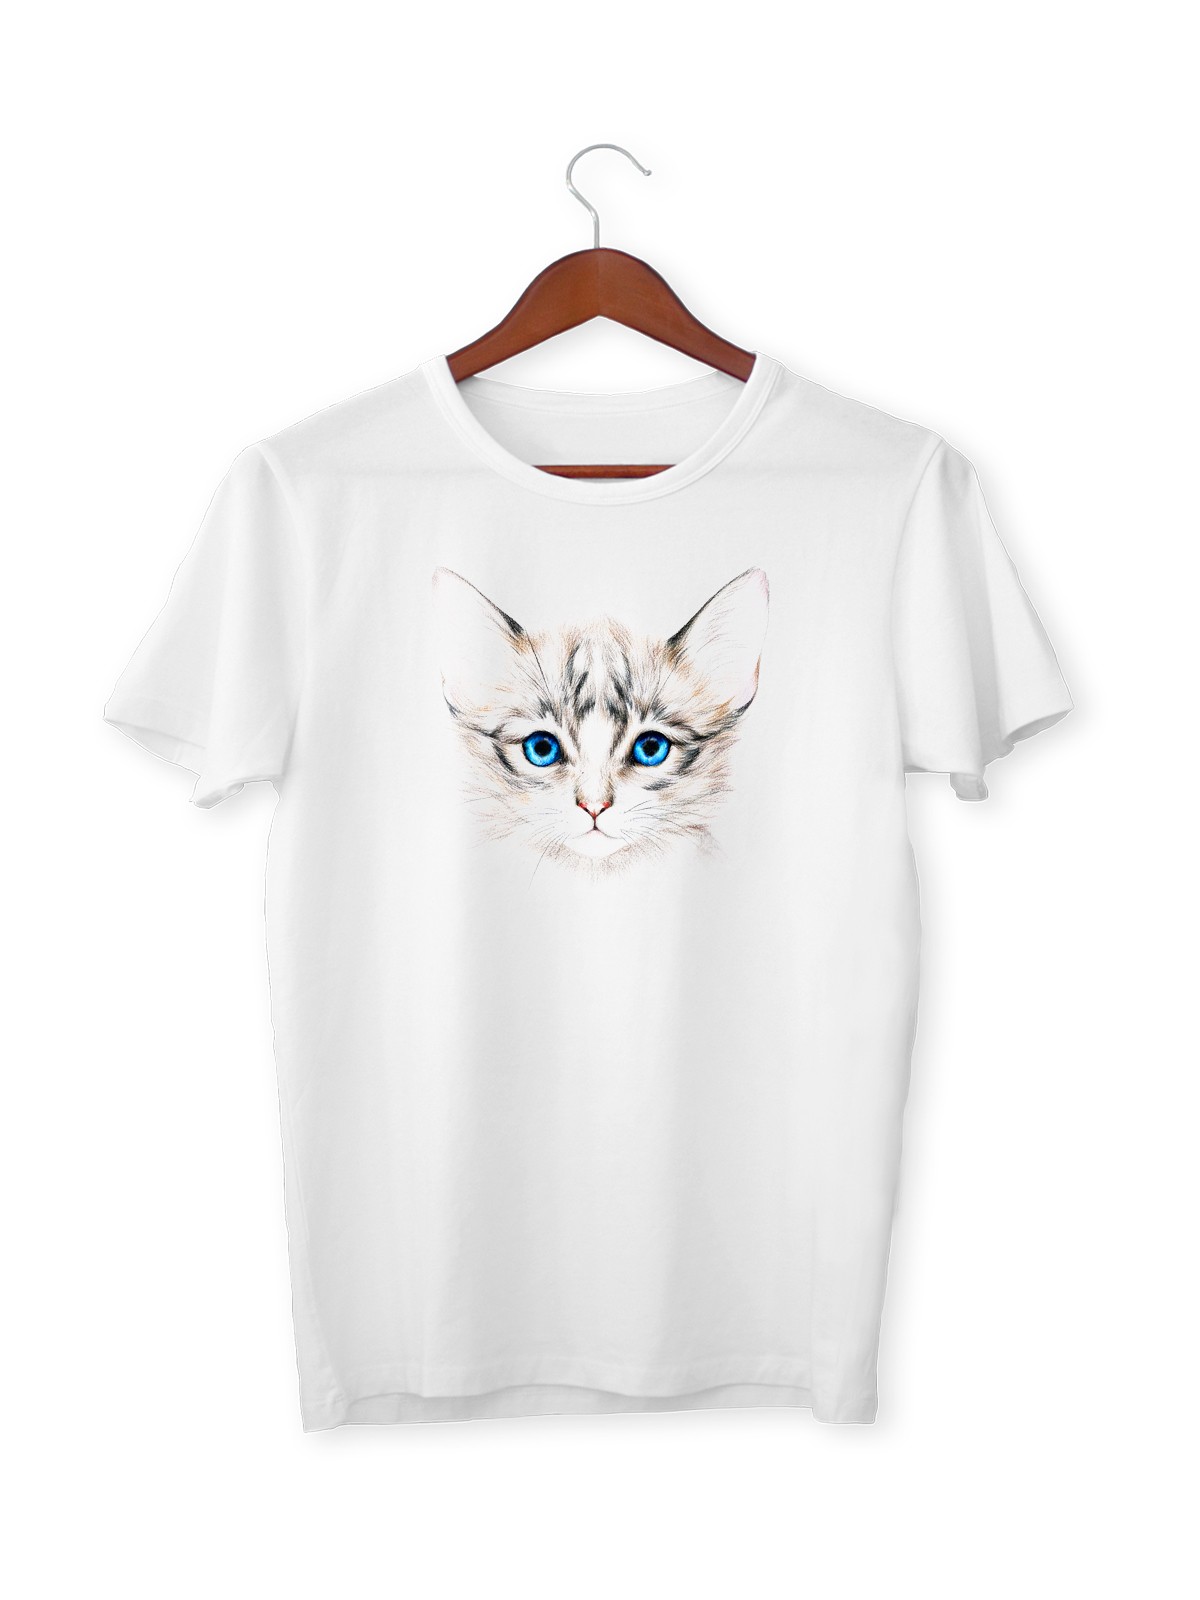 Kedi Baskılı Tişört